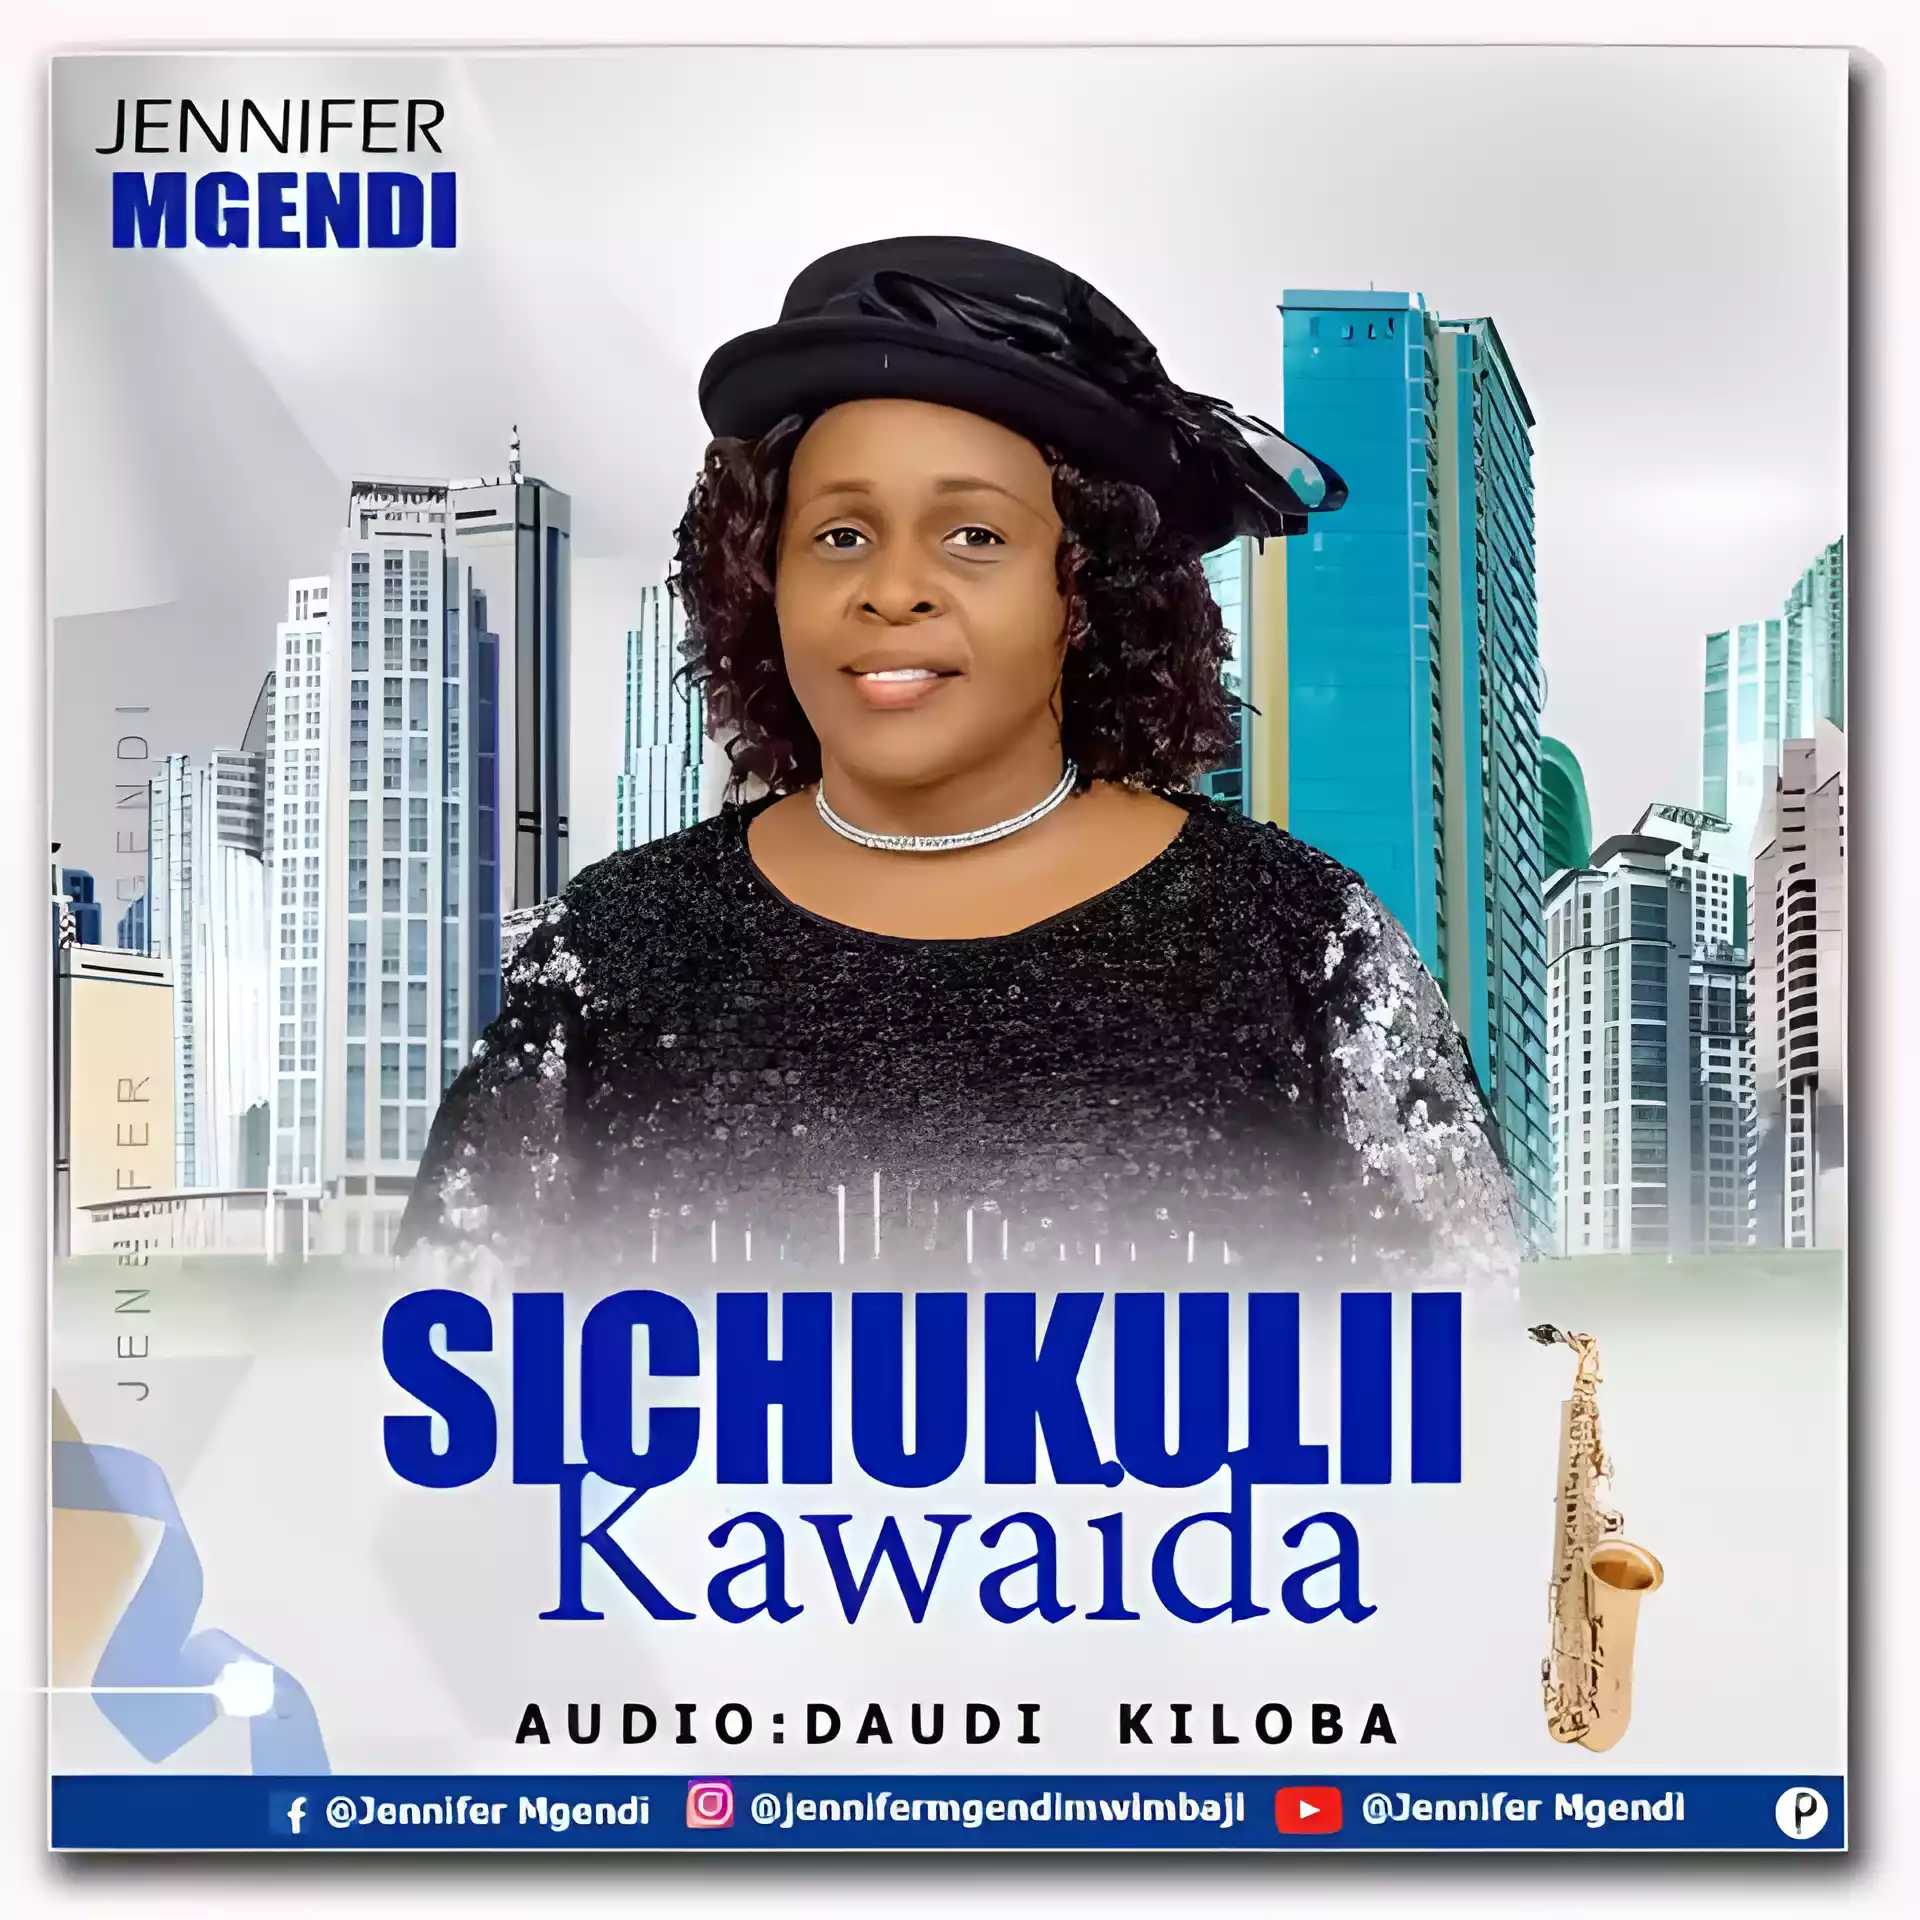 Jennifer Mgendi - Sichukulii Kawaida Mp3 Download